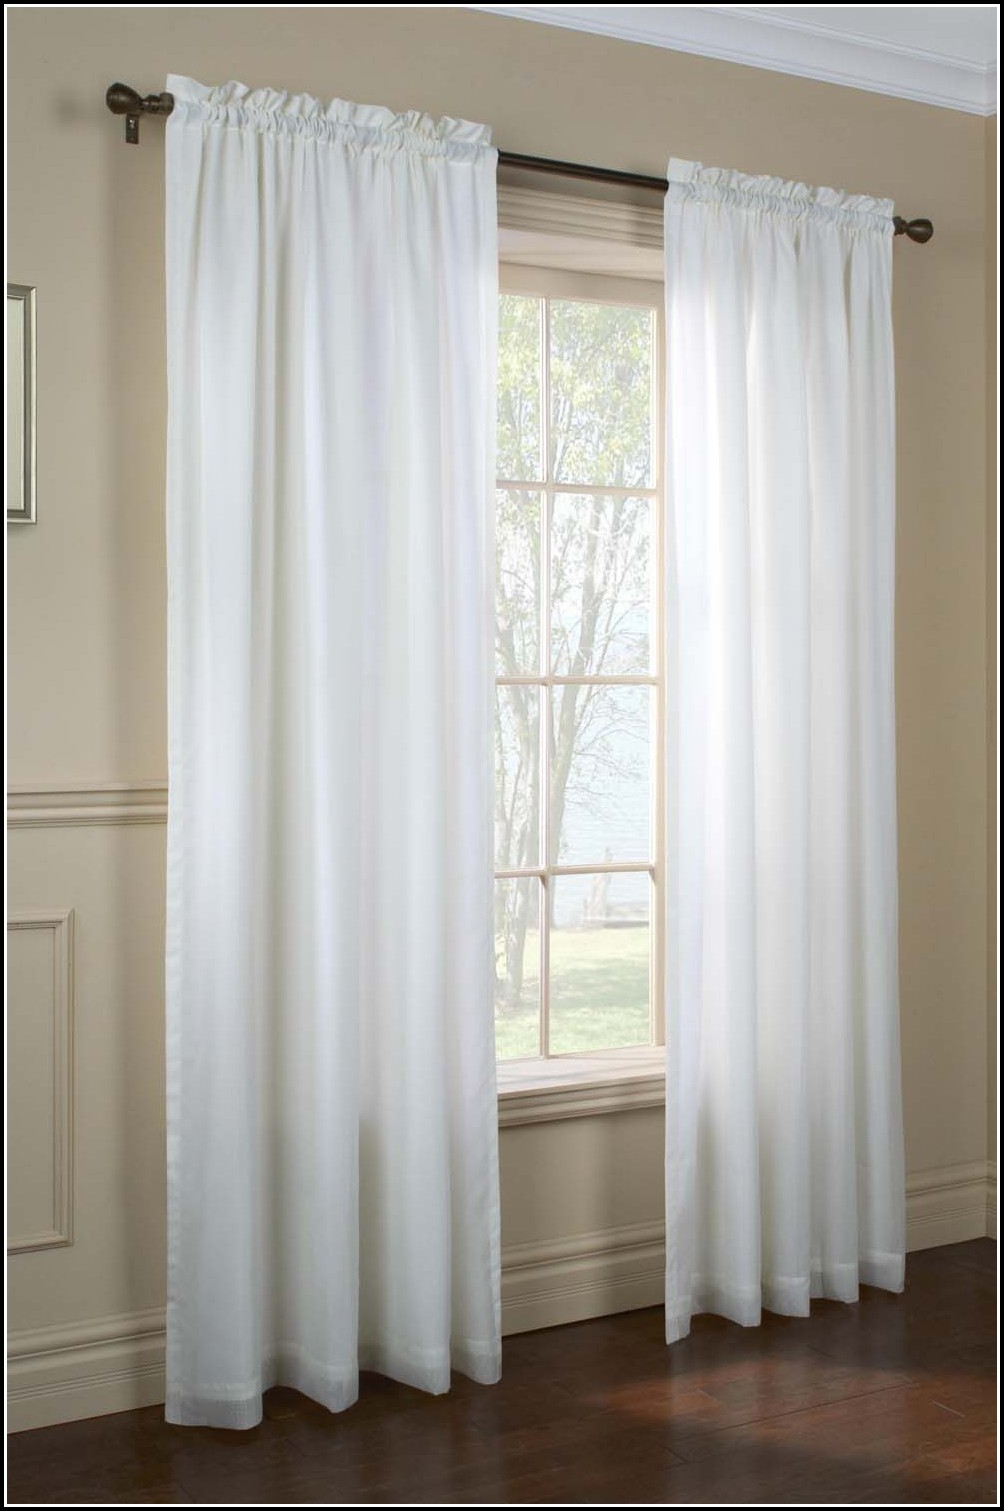 72 Inch Long Sheer Curtains  Curtains : Home Design Ideas qbn1LOYP4m32854